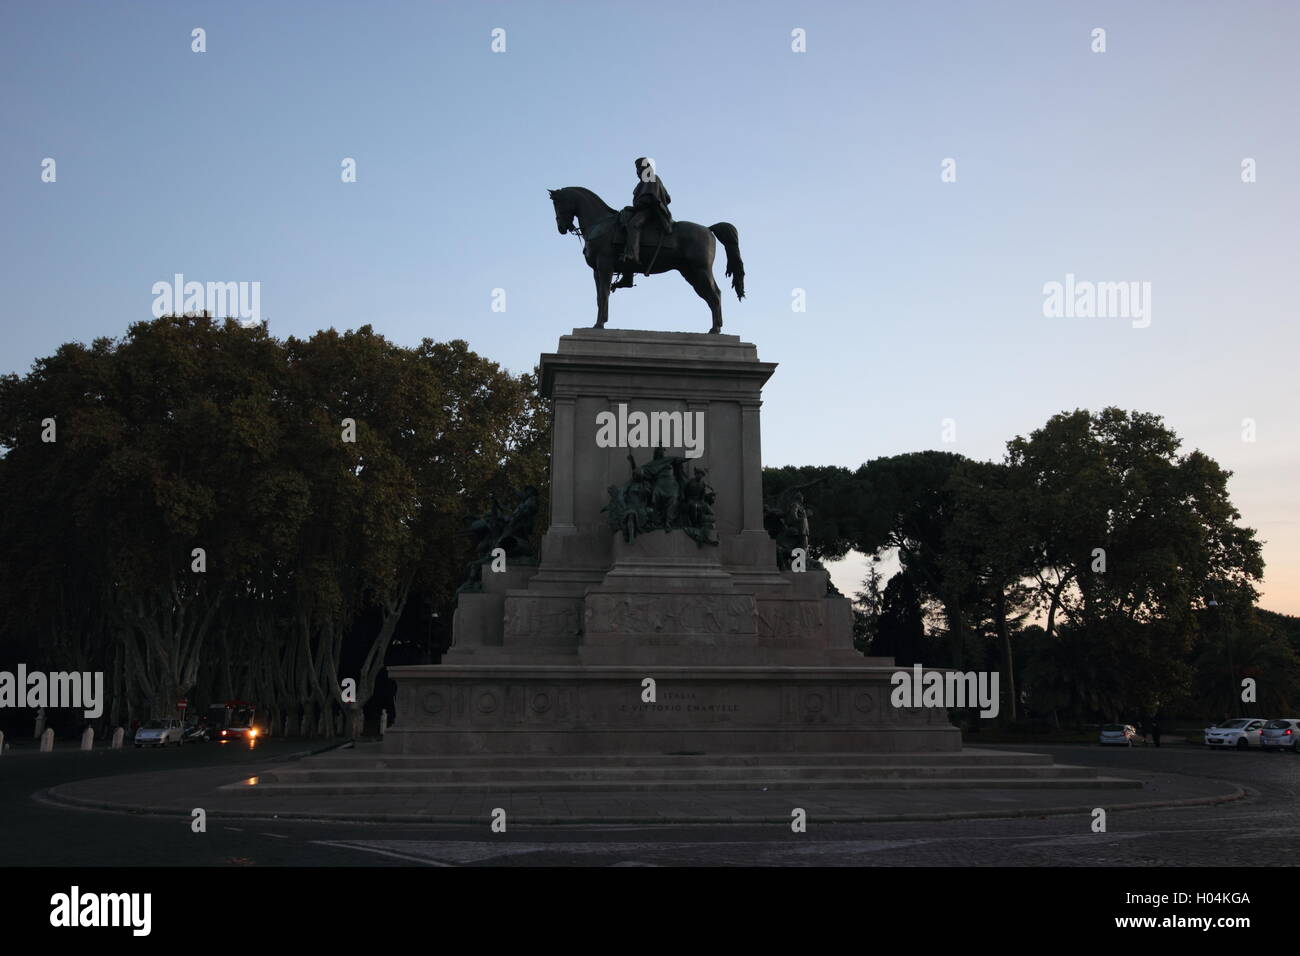 Monument équestre au Gianicolo dédié à Giuseppe Garibaldi, Rome, Italie Banque D'Images